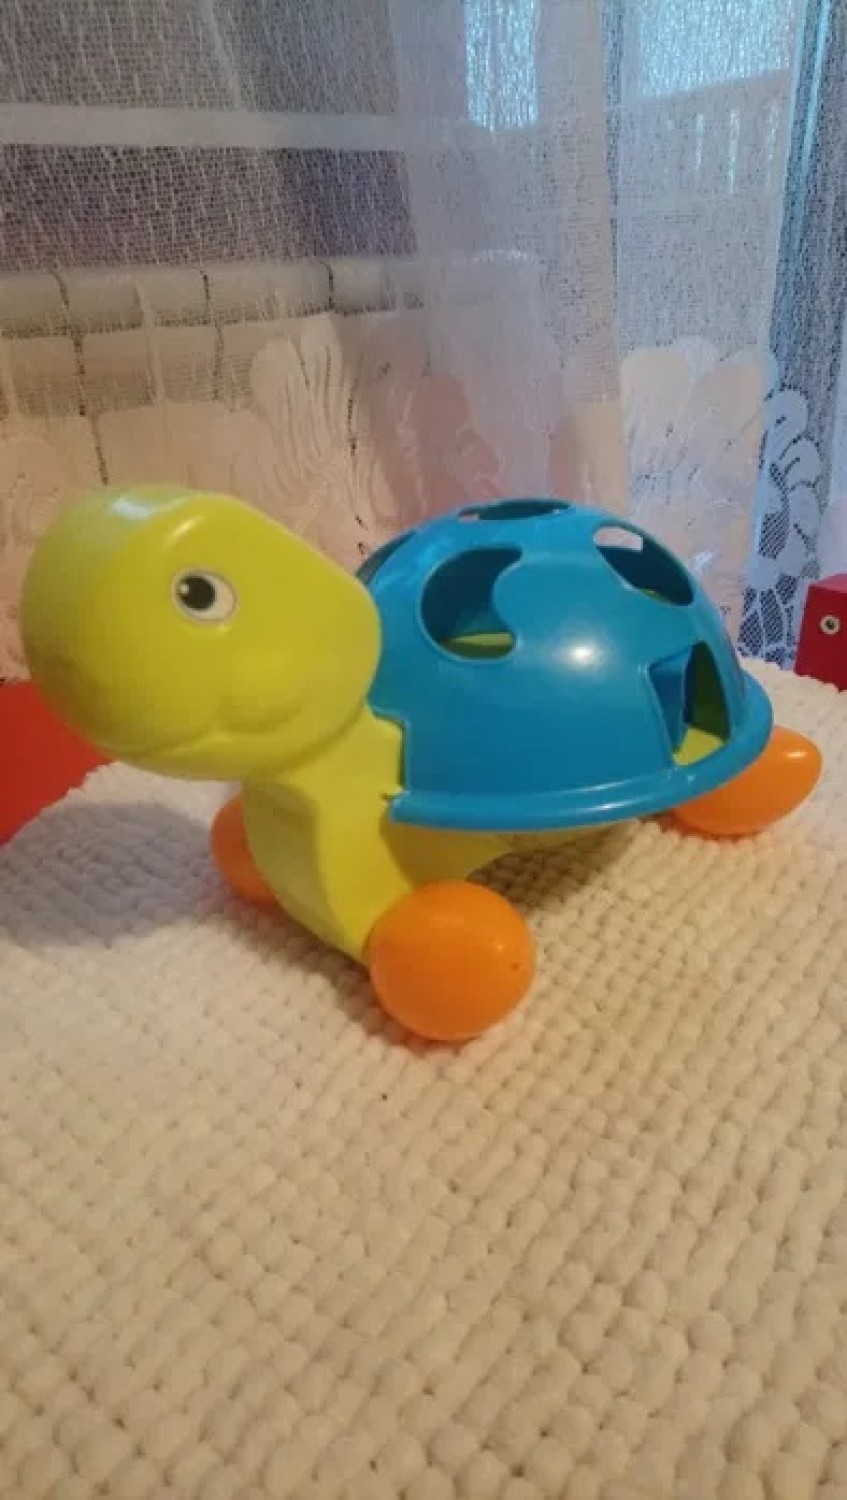 Zabawka żółwik

Link do ogłoszenia